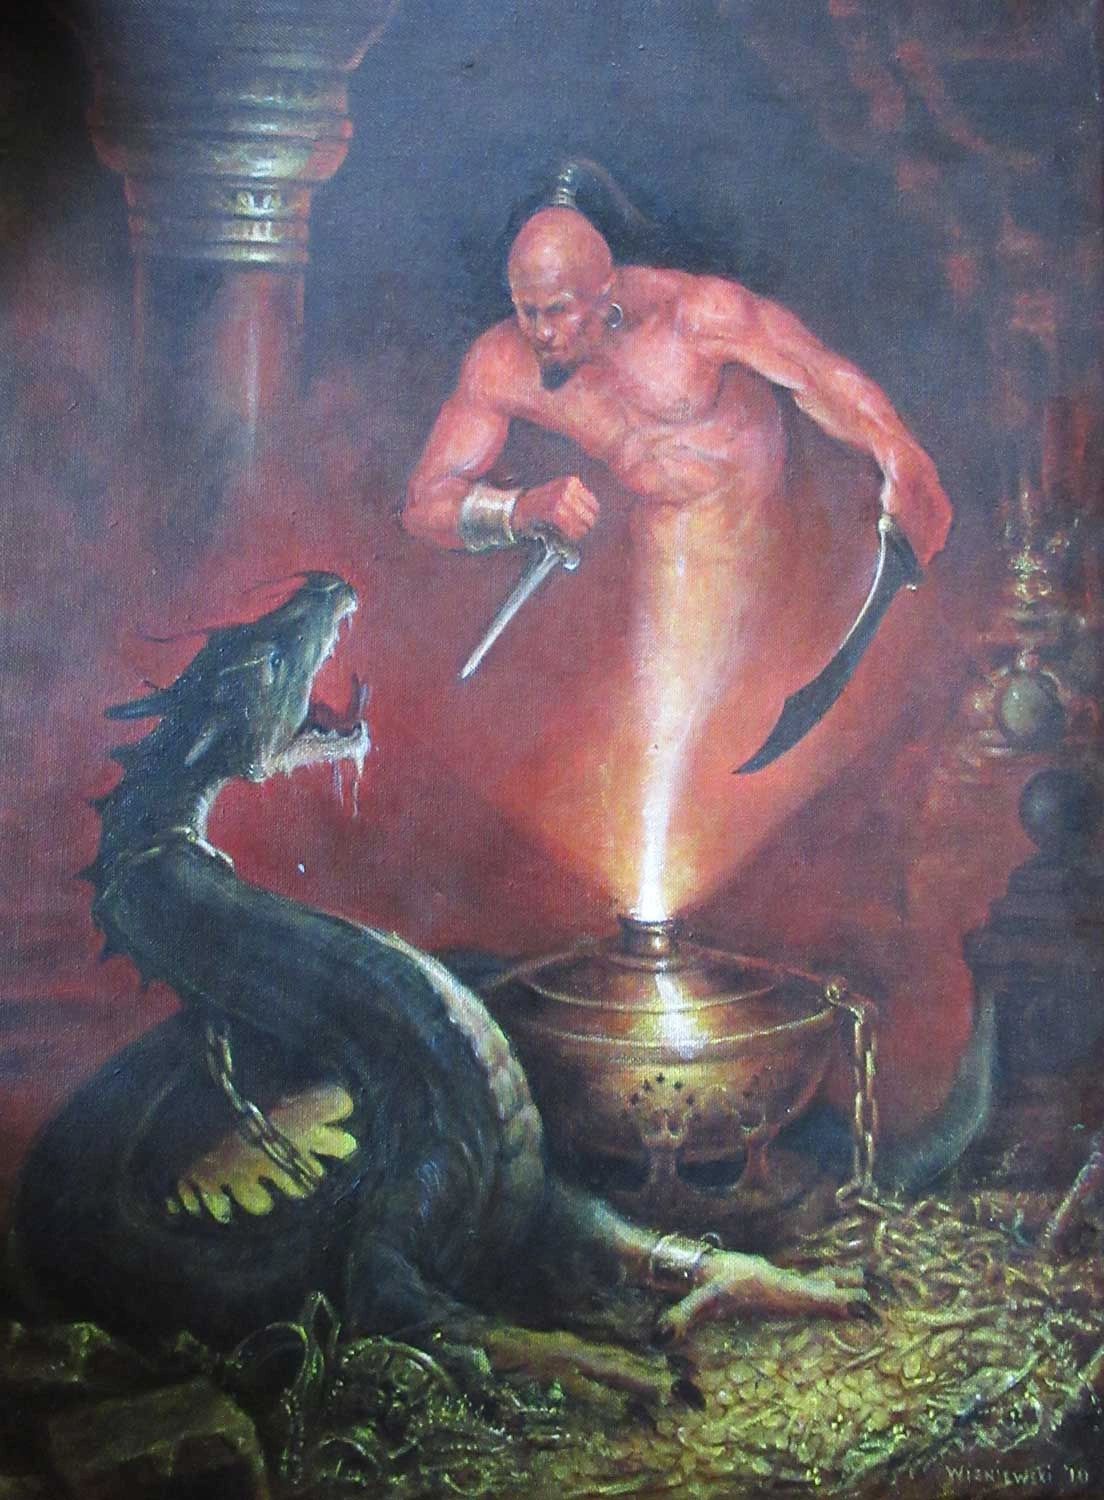 Genie fighting a chained dragon, Acrylic painting by Stan Wisniewski.